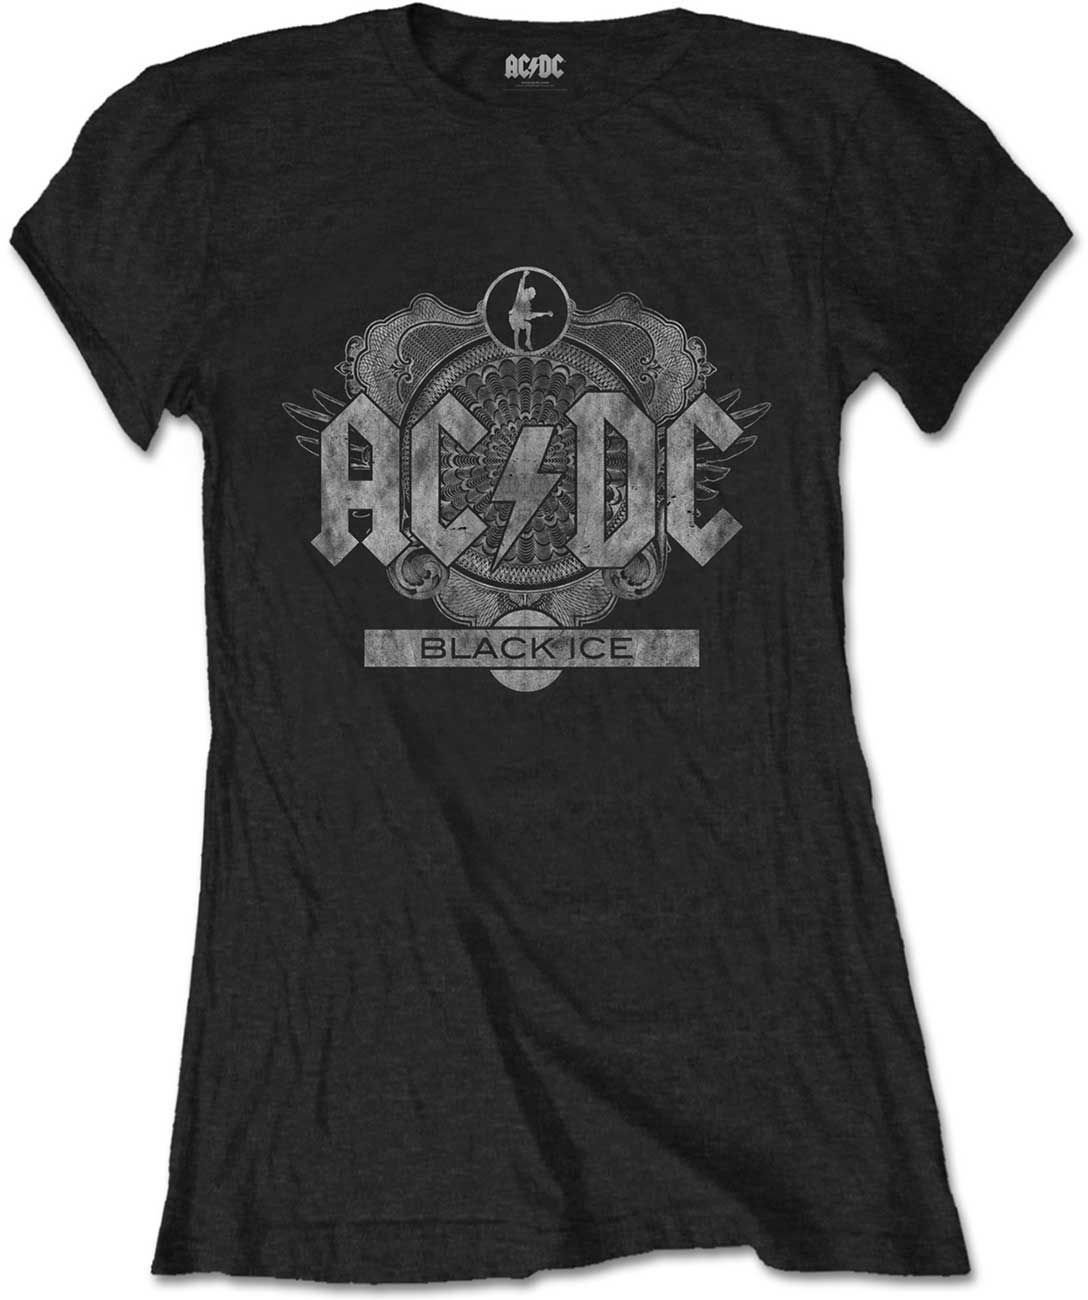 Ing AC/DC Tee: Black Ice S